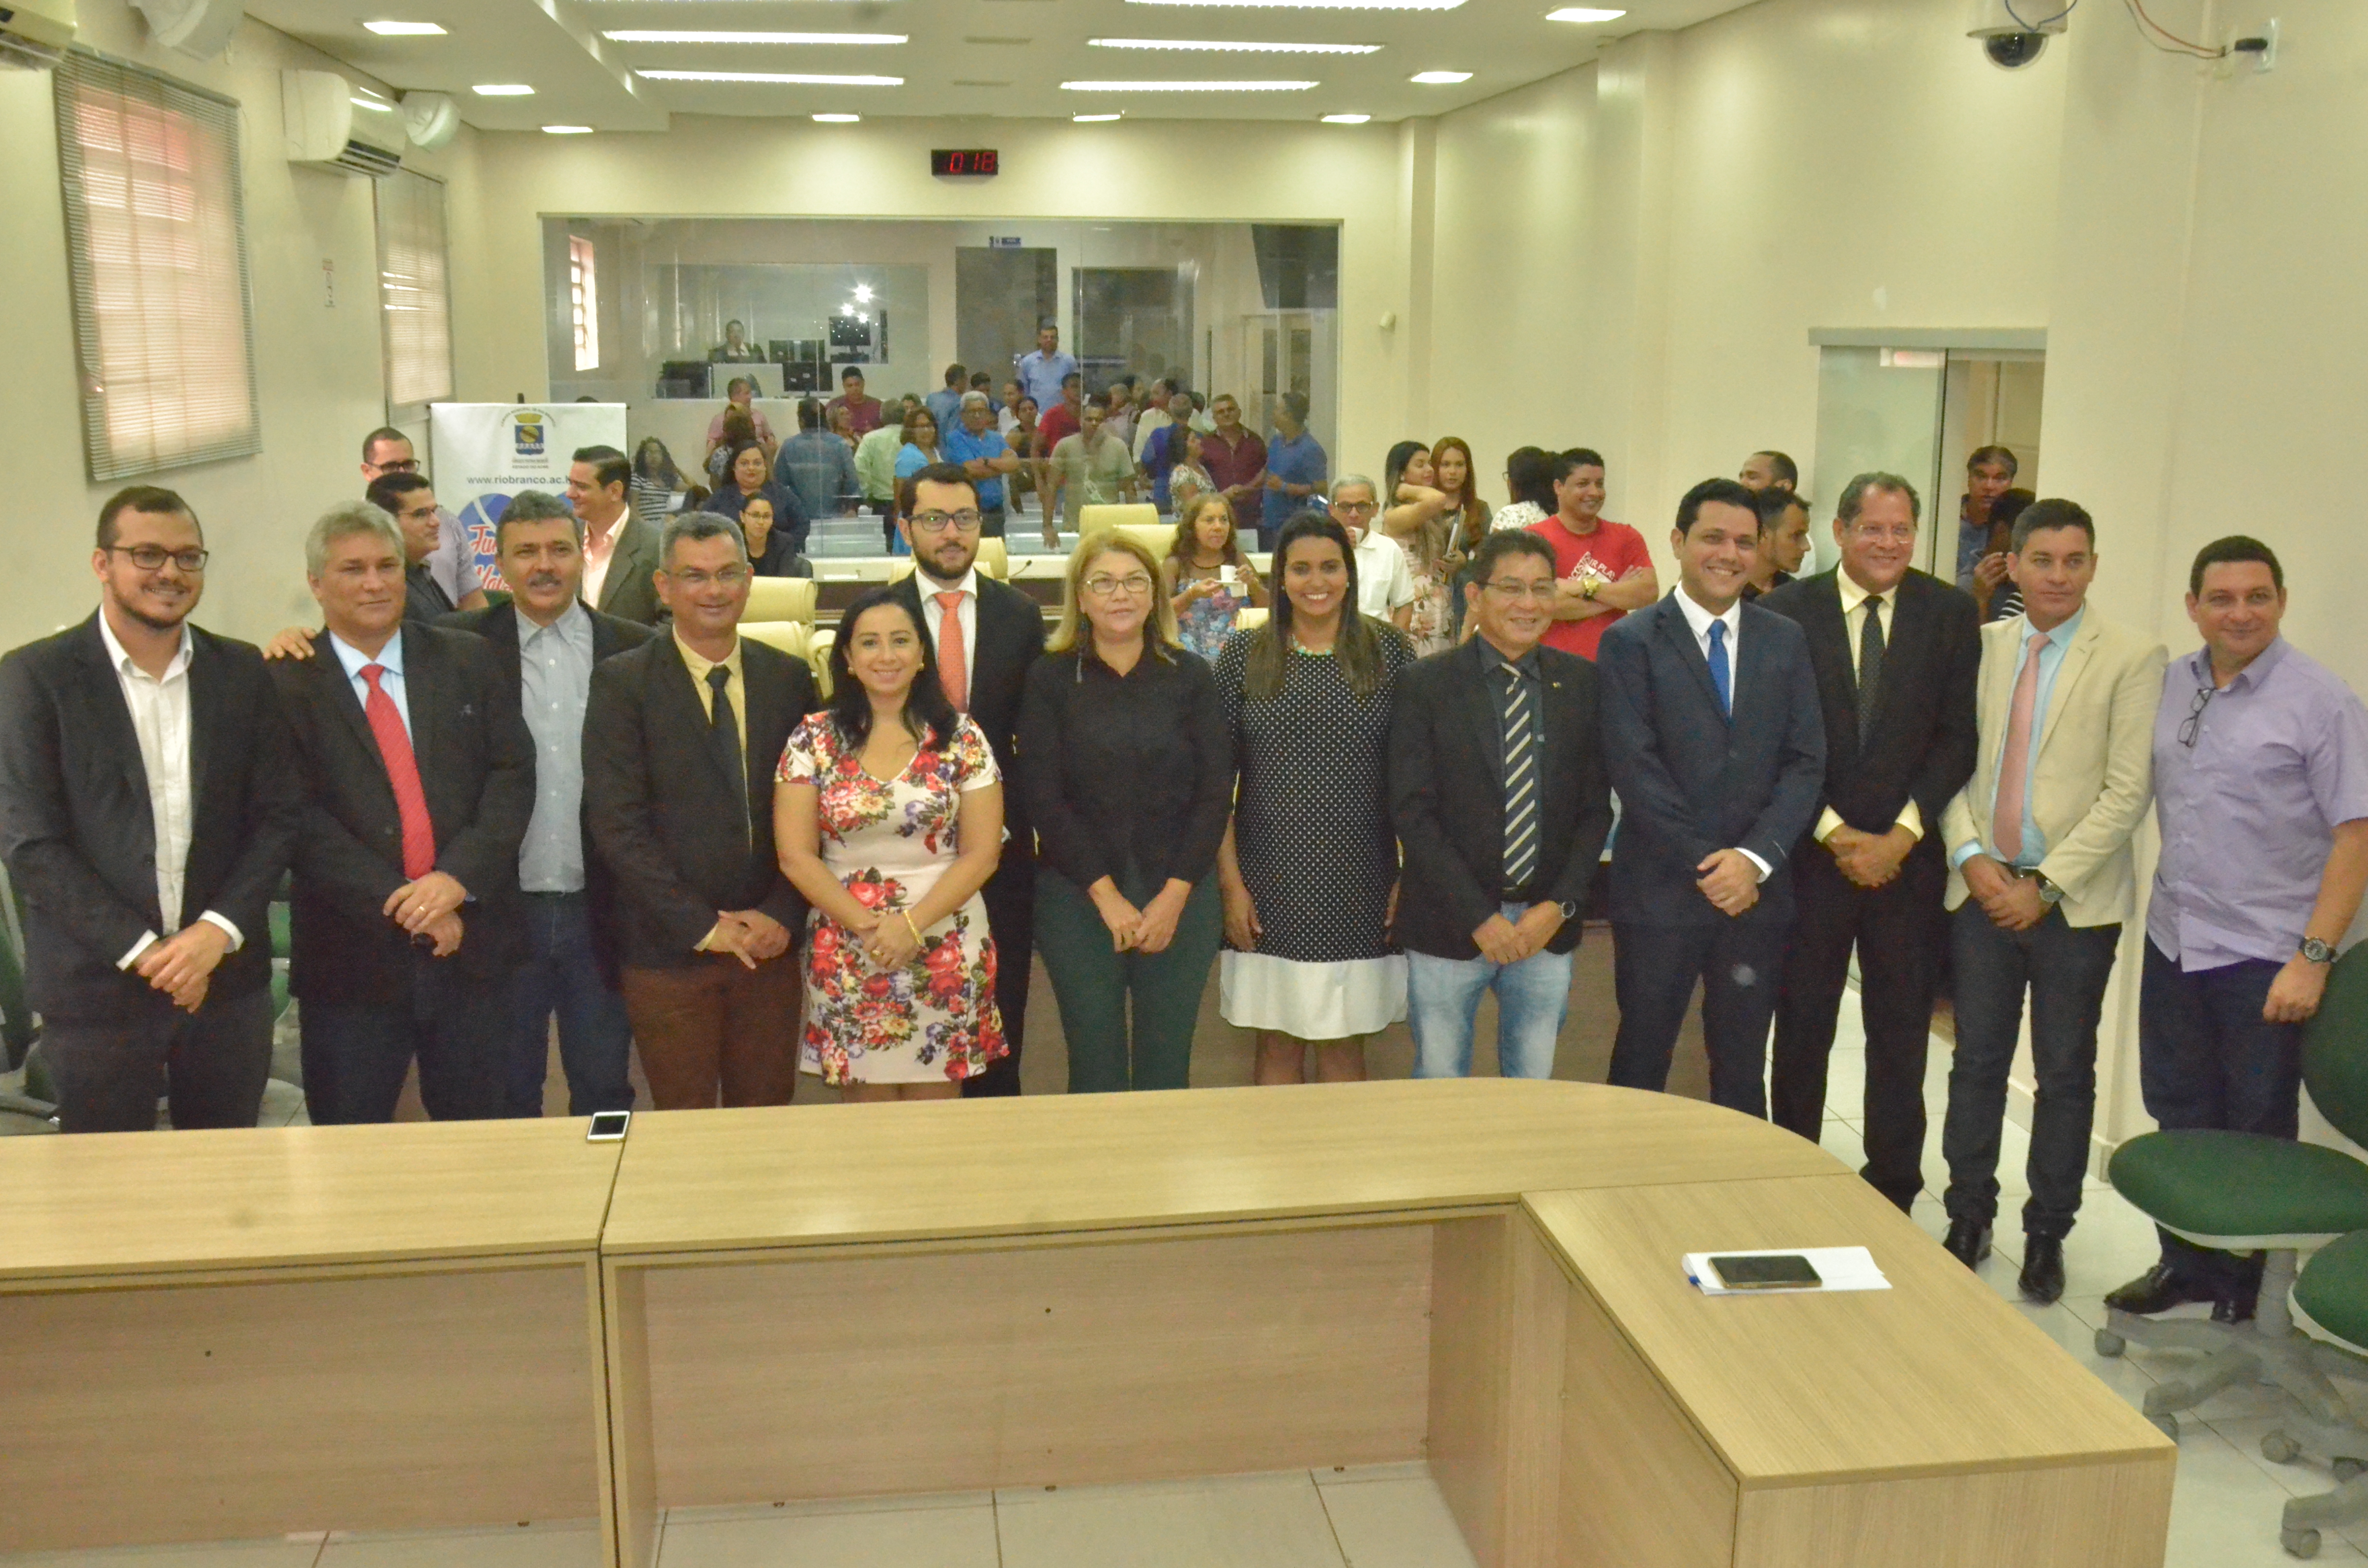 Vereadores de Rio Branco dão boas-vindas aos novos colegas de parlamento